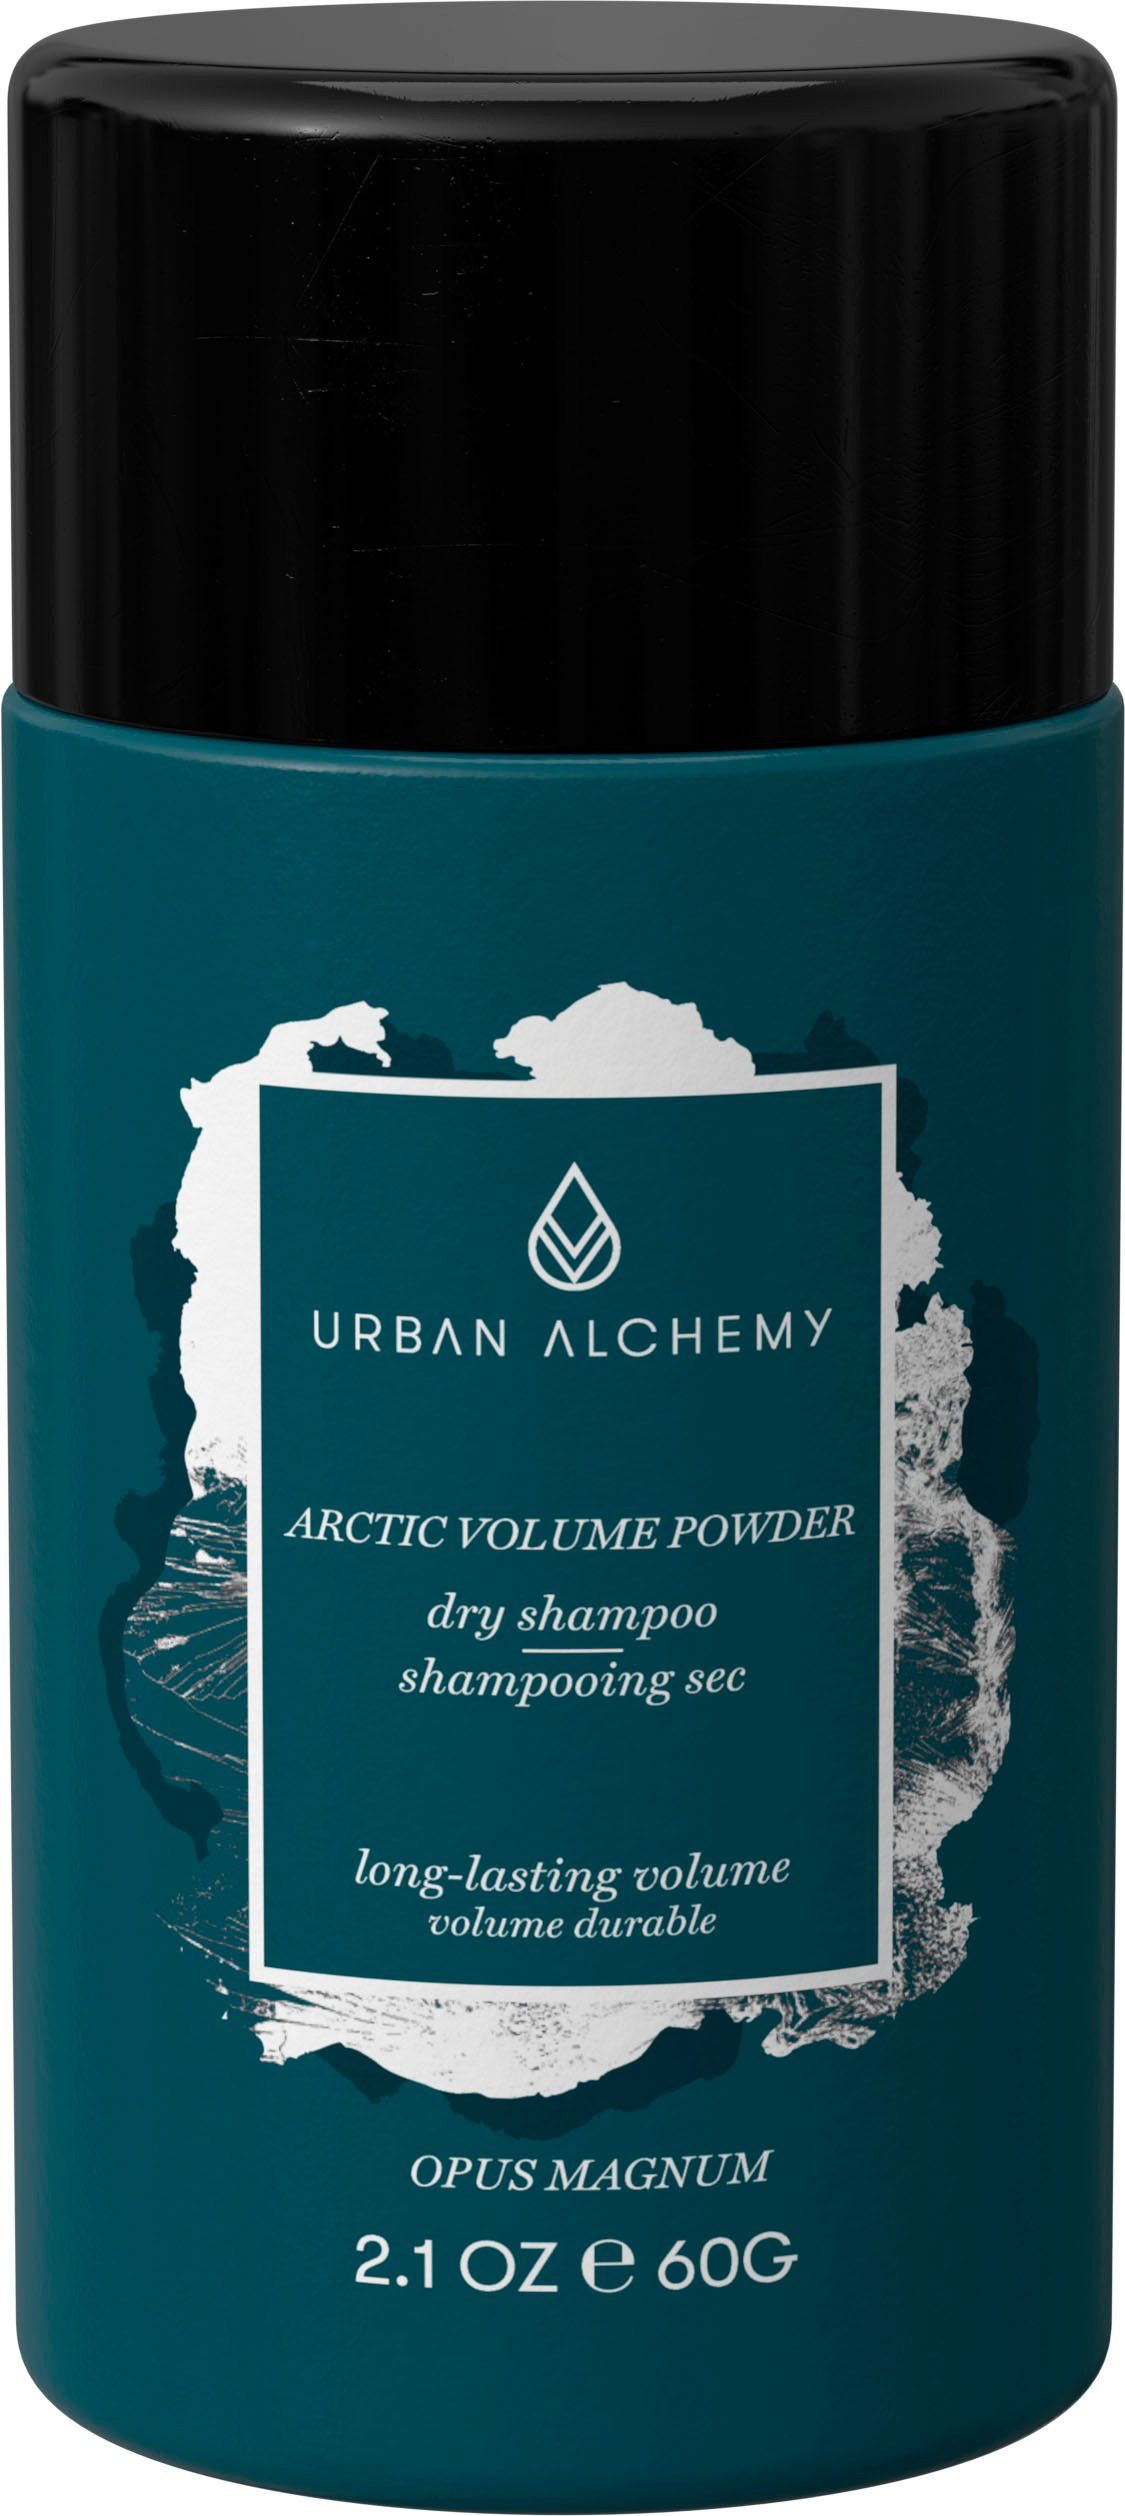 Arctic Volume URBAN Powder Volumenpuder ALCHEMY